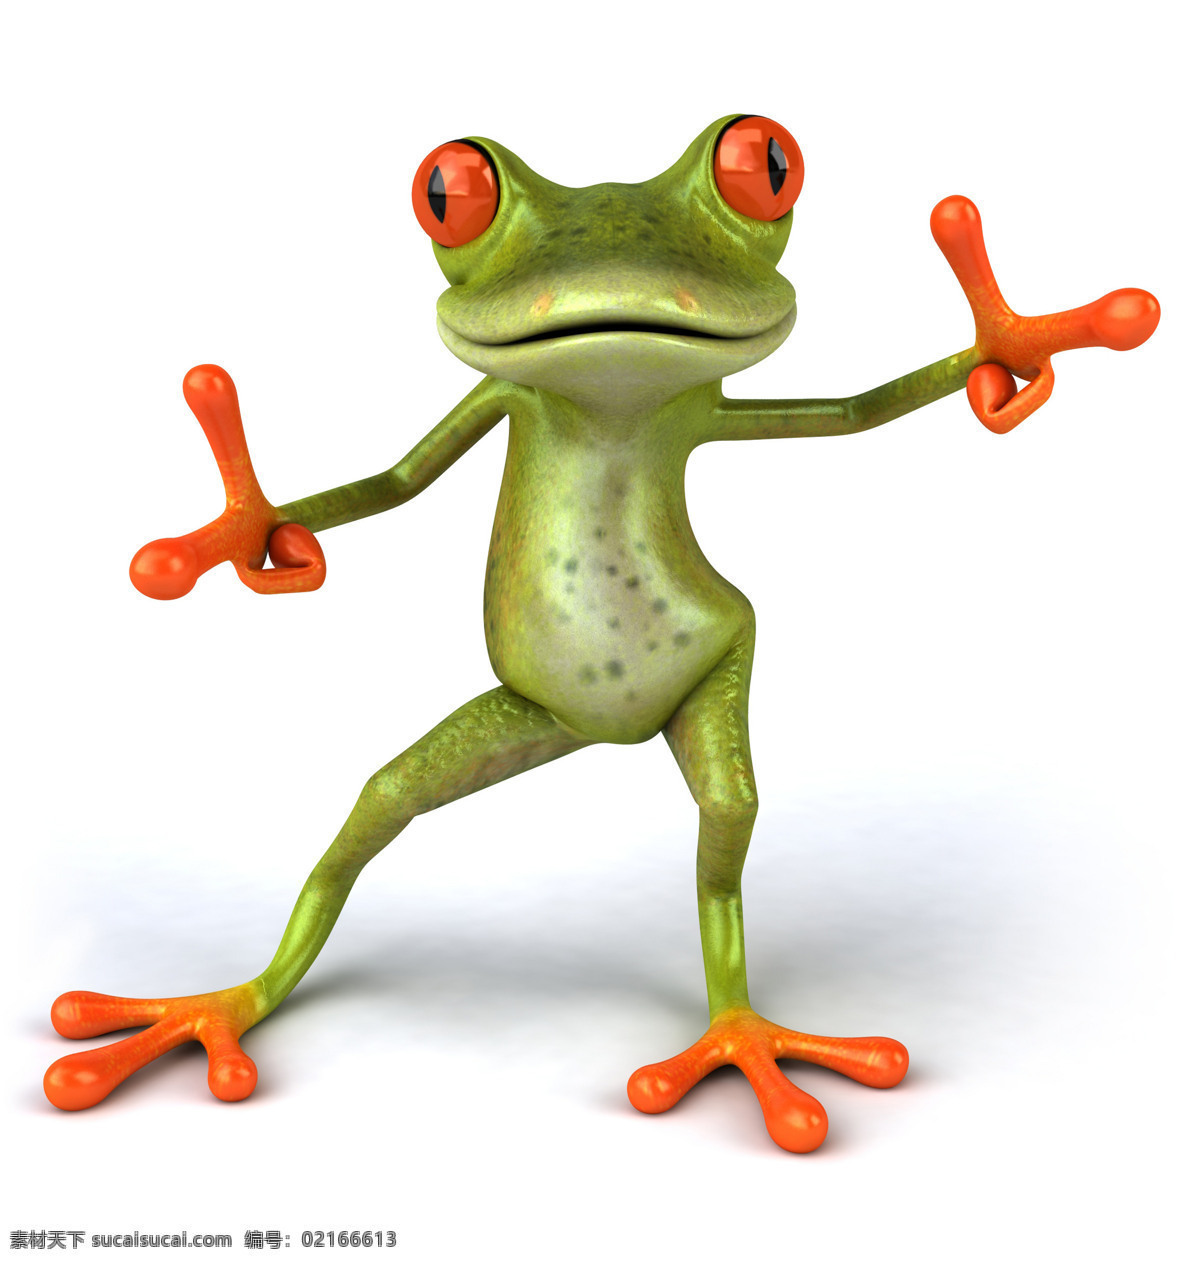 3d青蛙 卡通青蛙 疯狂青蛙 高清图片 青蛙 动物素材 生物世界 野生动物